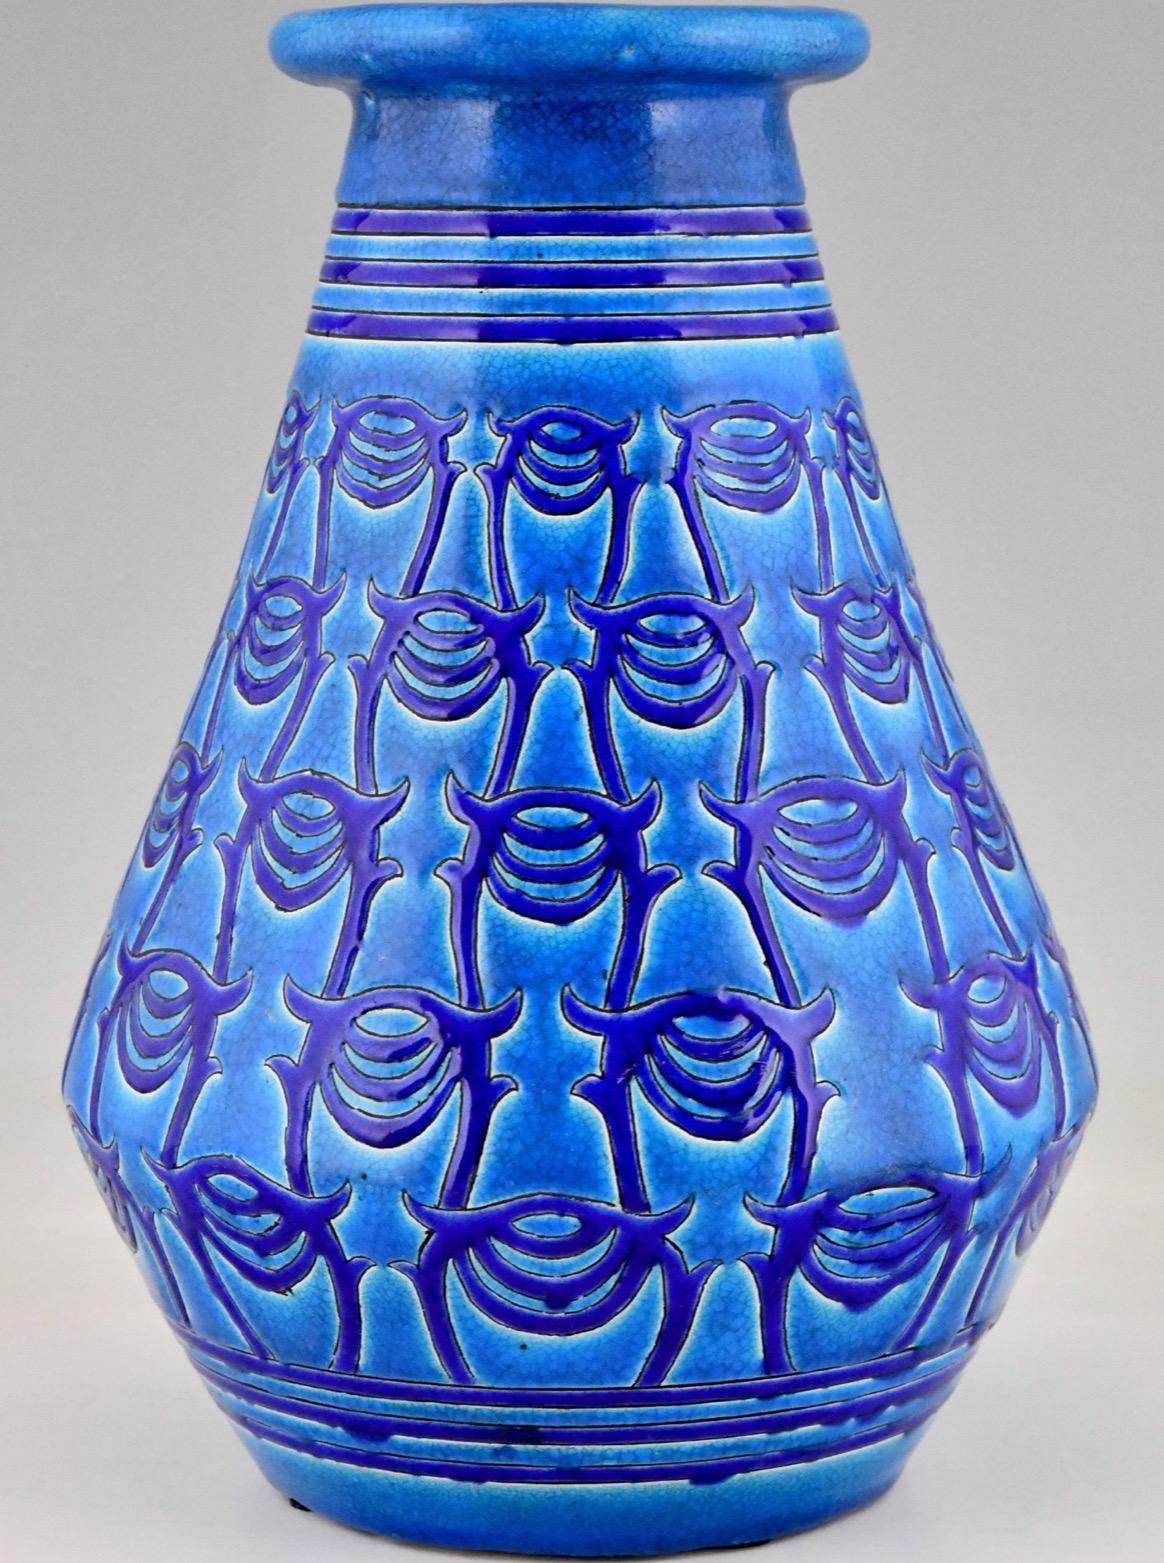 Vase Art déco bleu, en céramique. Atelier Primavera, Longwy.  France, 1927. Ce vase a été conçu en 1919.
